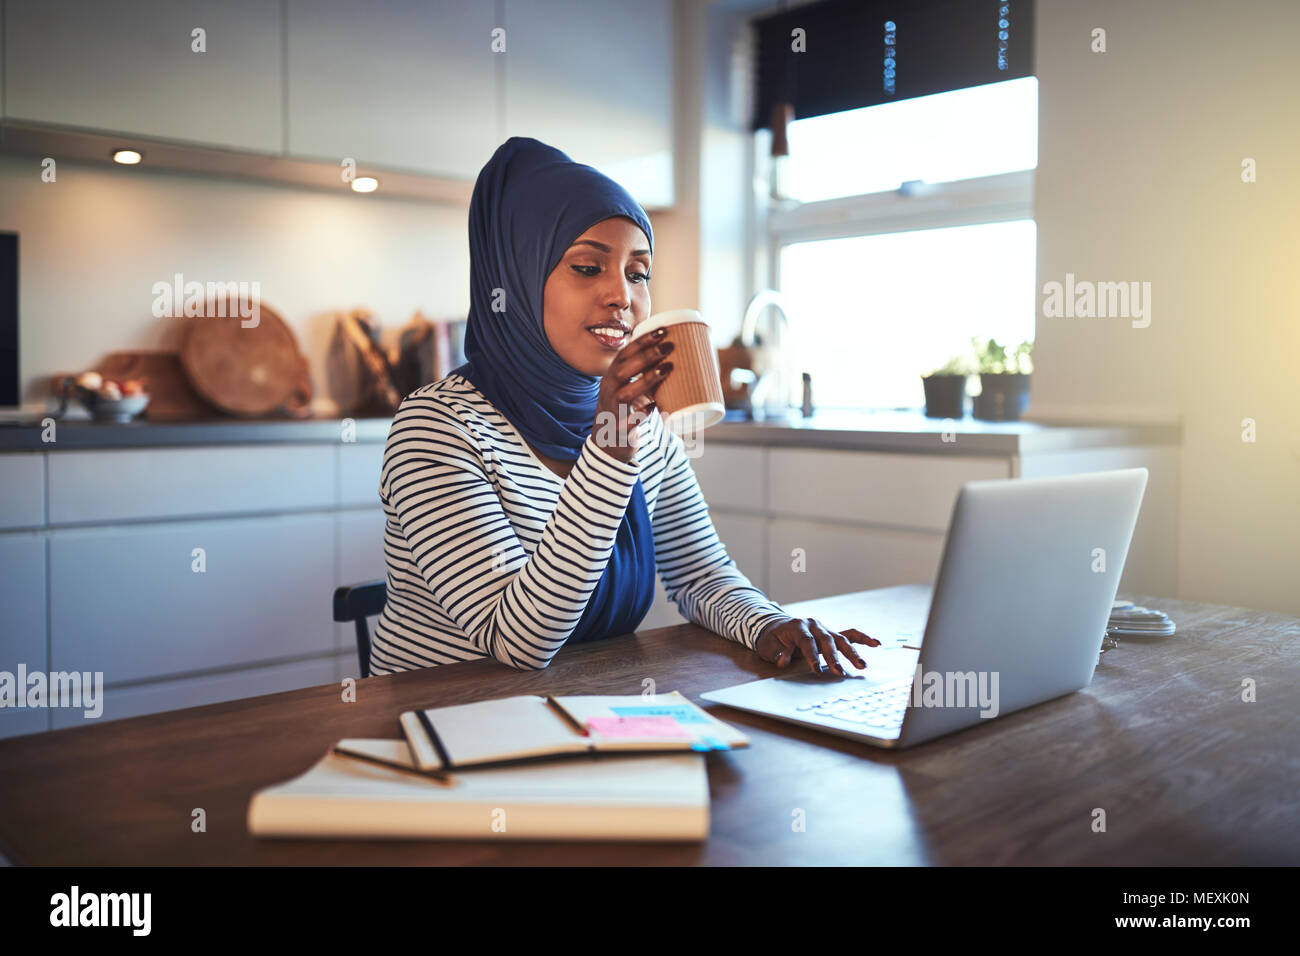 Jeune femme entrepreneur arabe portant un hijab de boire un café et de travailler sur un ordinateur portable tout en étant assis à une table dans sa cuisine Banque D'Images